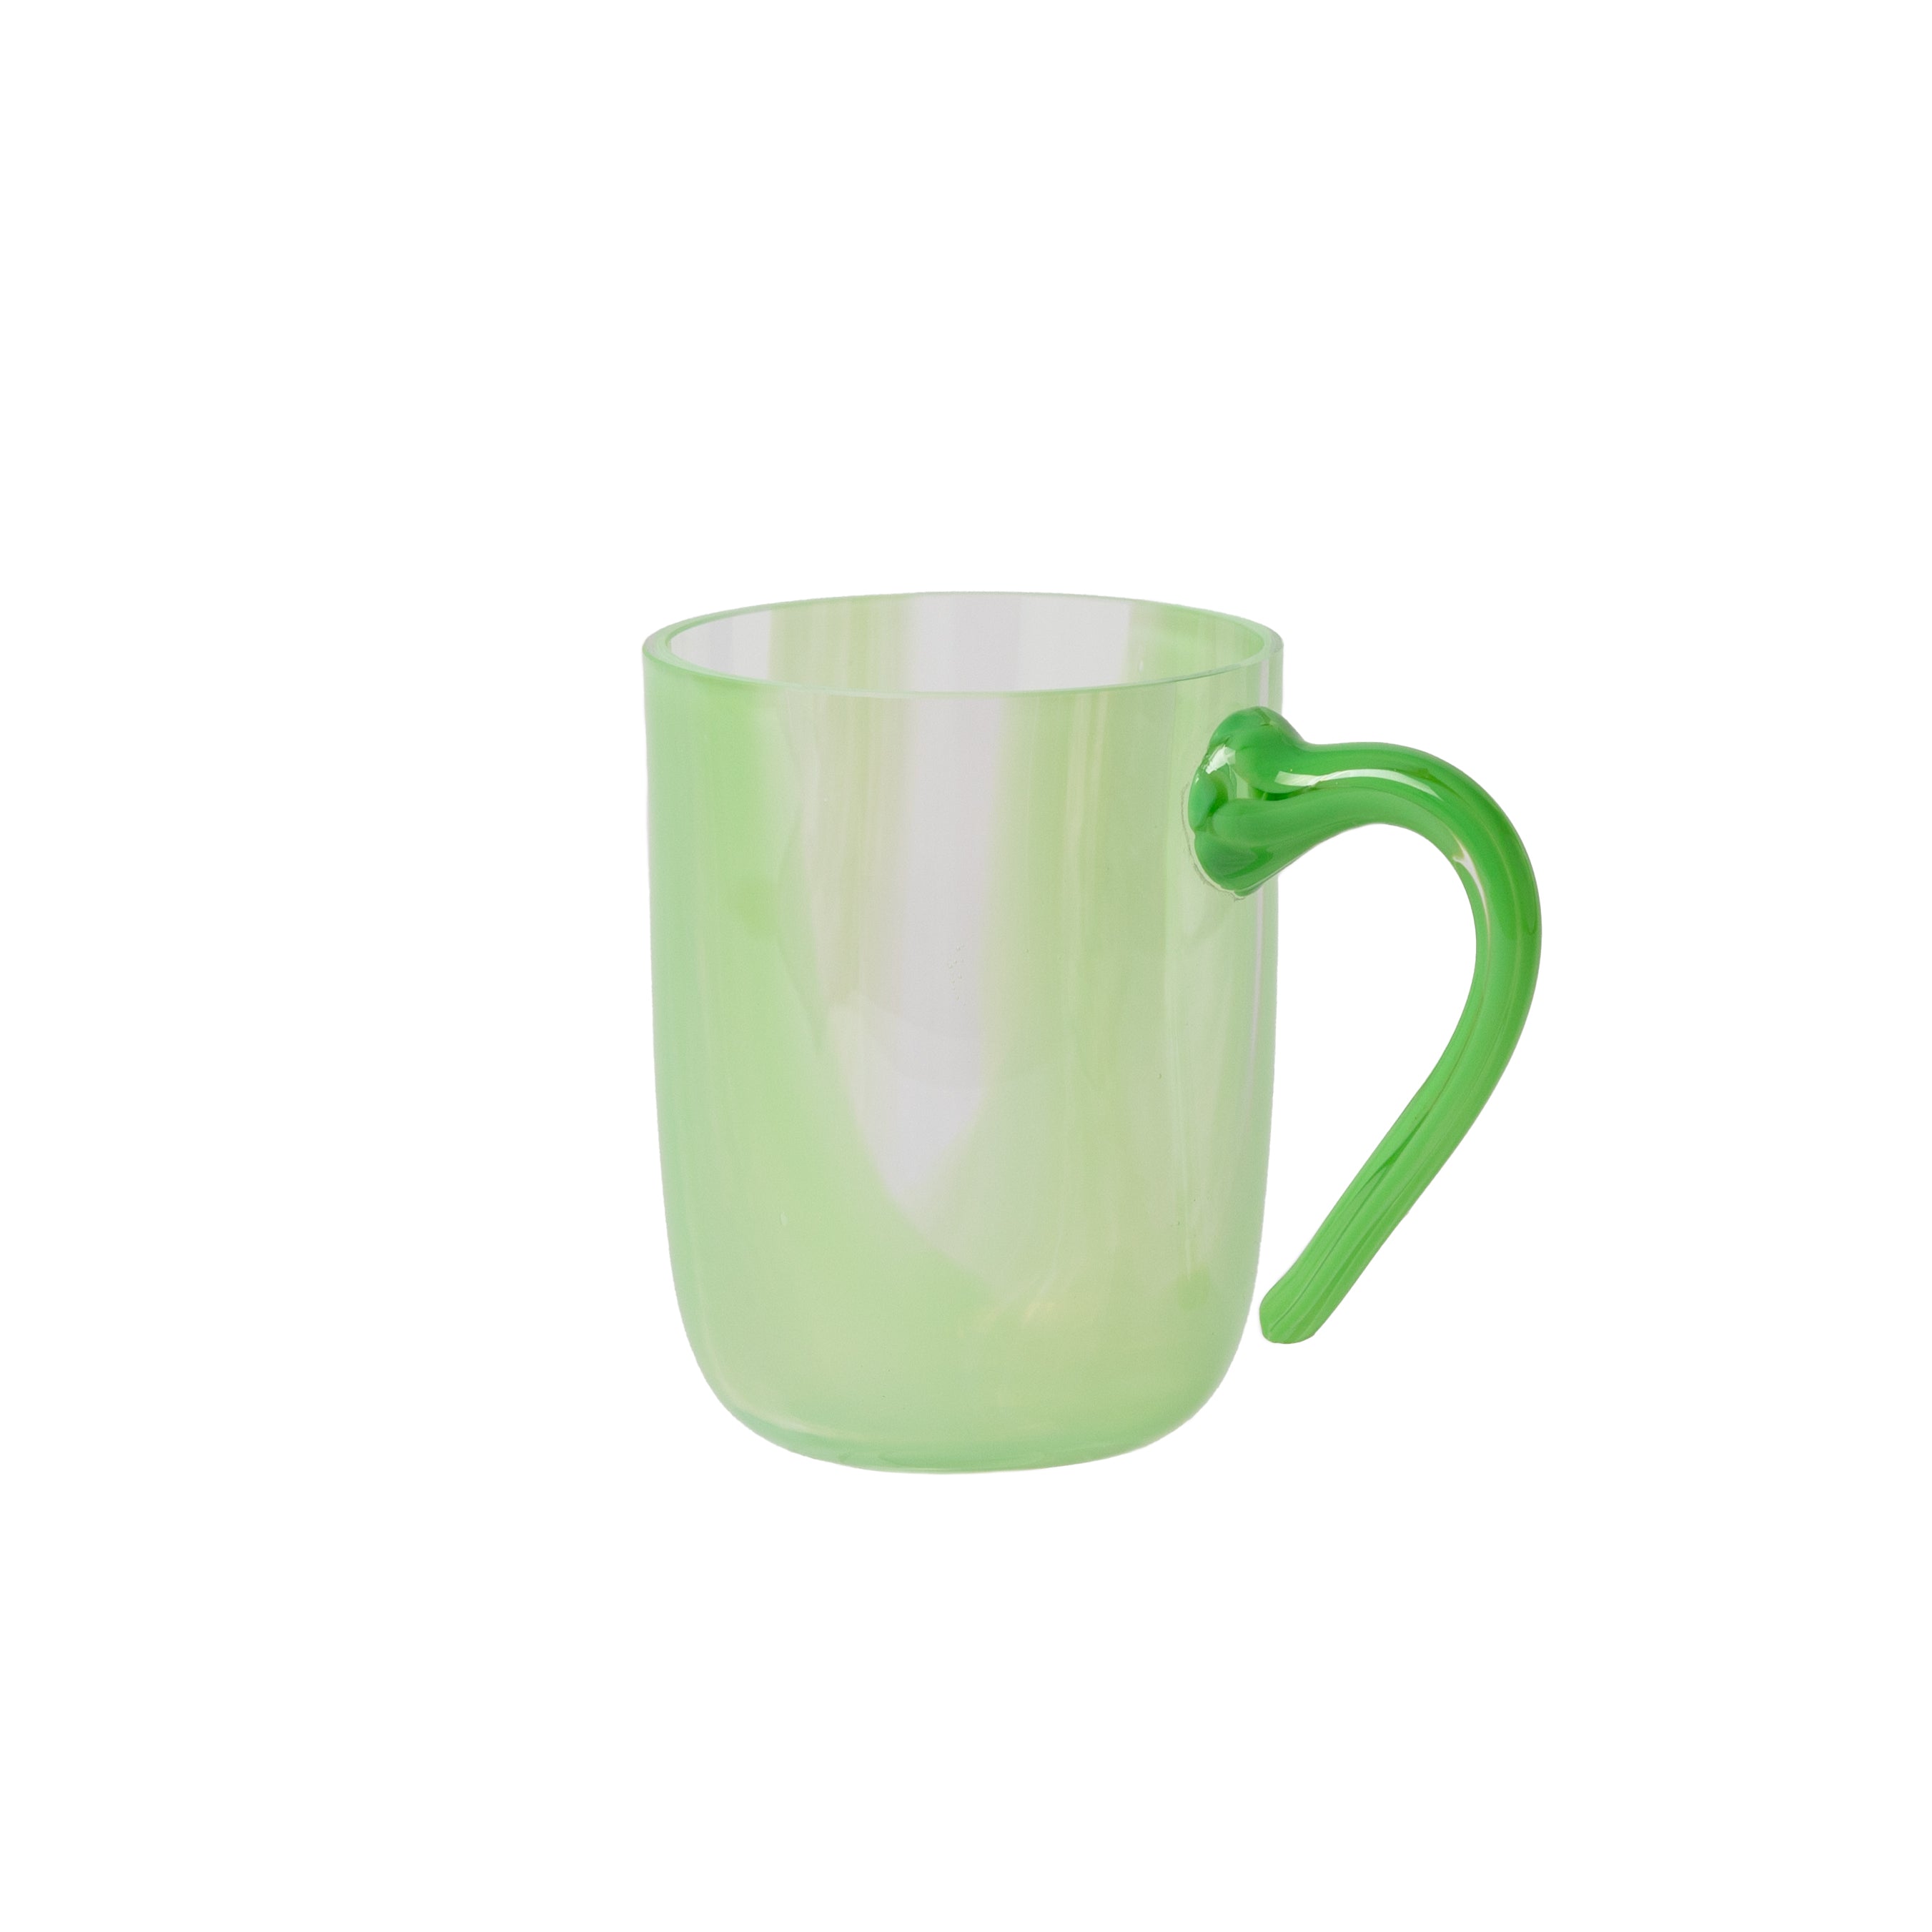 green glass mug